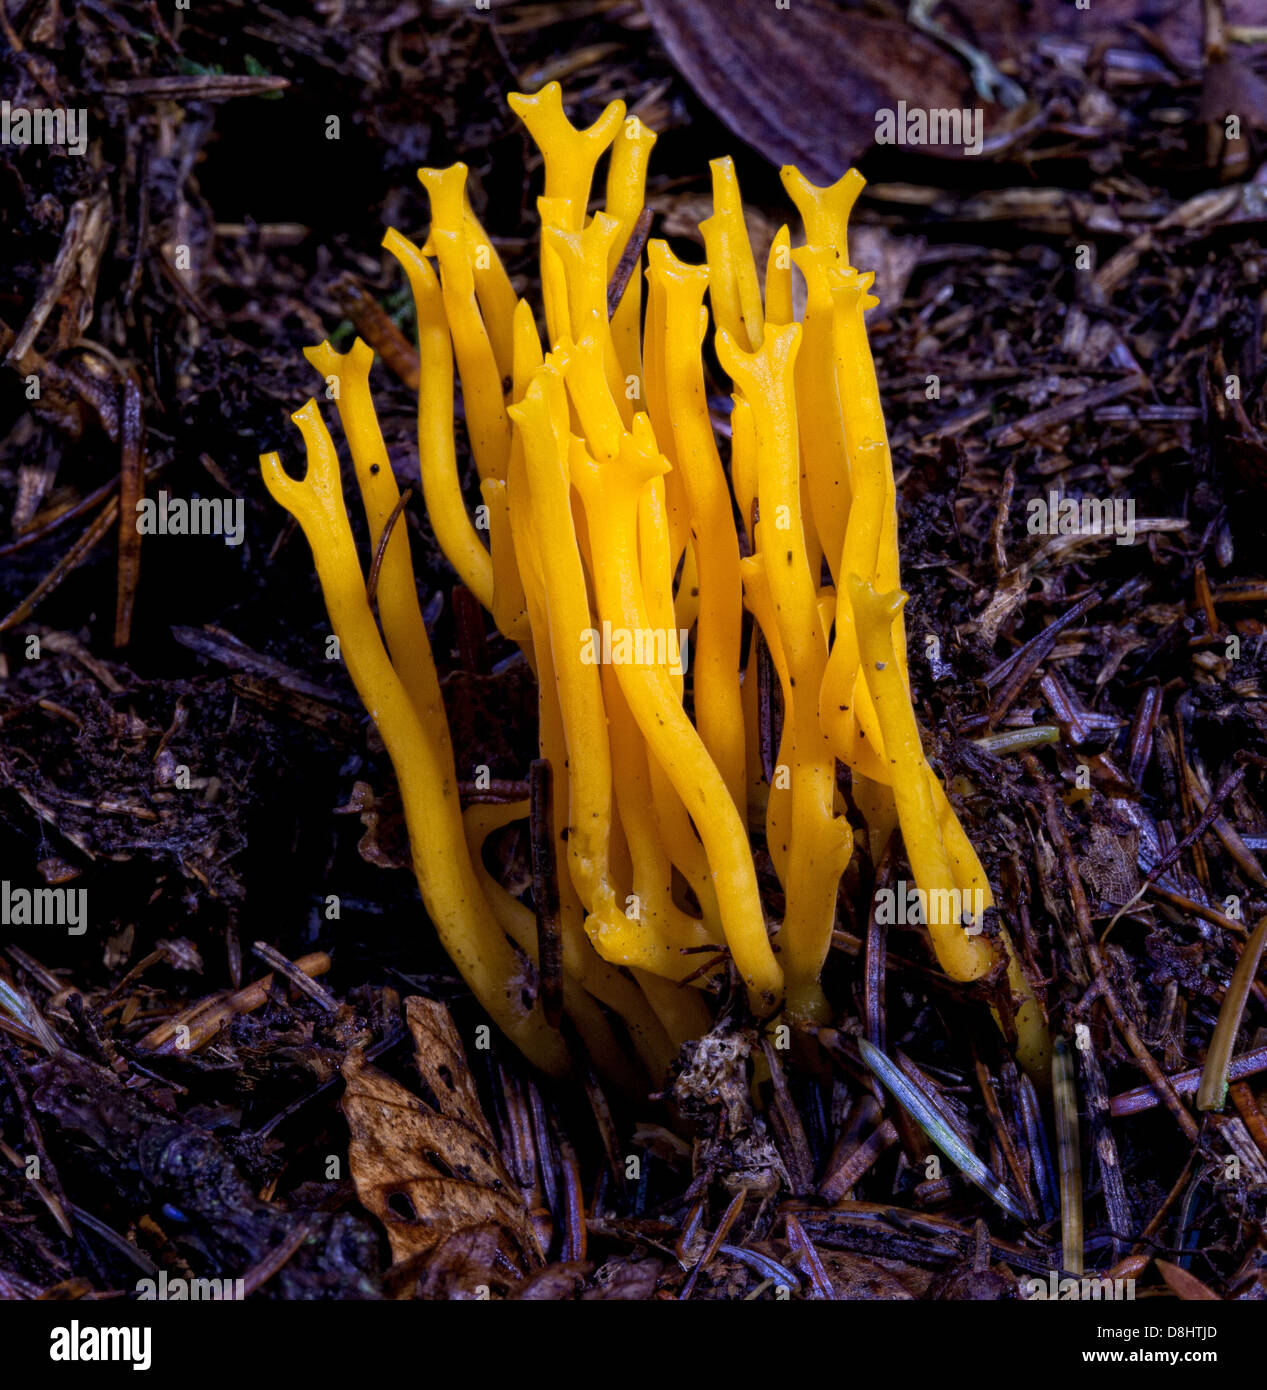 La viscosa di Calocera, comunemente conosciuta come i funghi stagshorn gialli, si trova in boschi, Scozia, Regno Unito Foto Stock